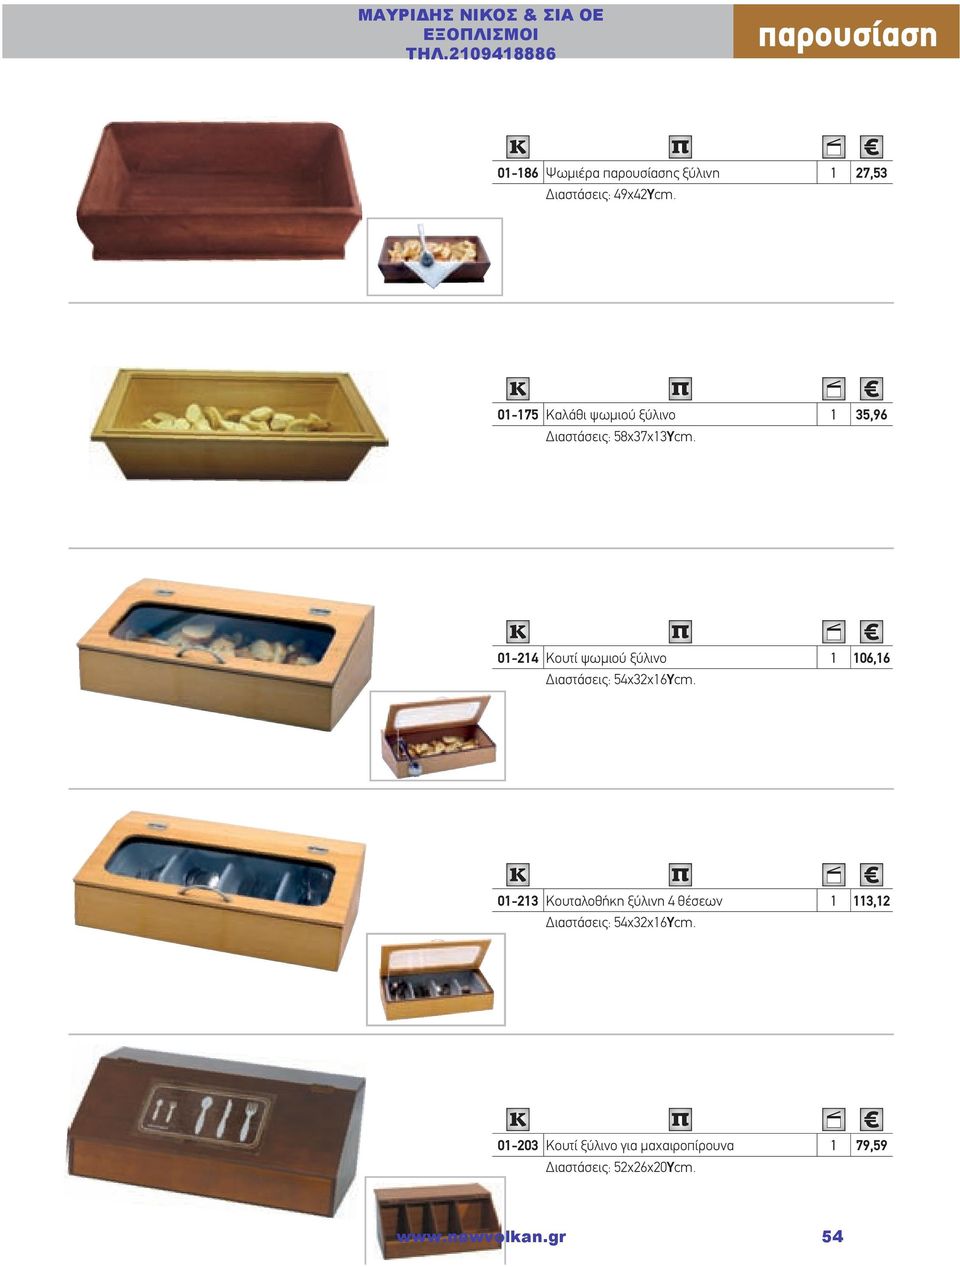 01-214 Κουτί ψωμιού ξύλινο 1 106,16 Διαστάσεις: 54χ32χ16Υcm.